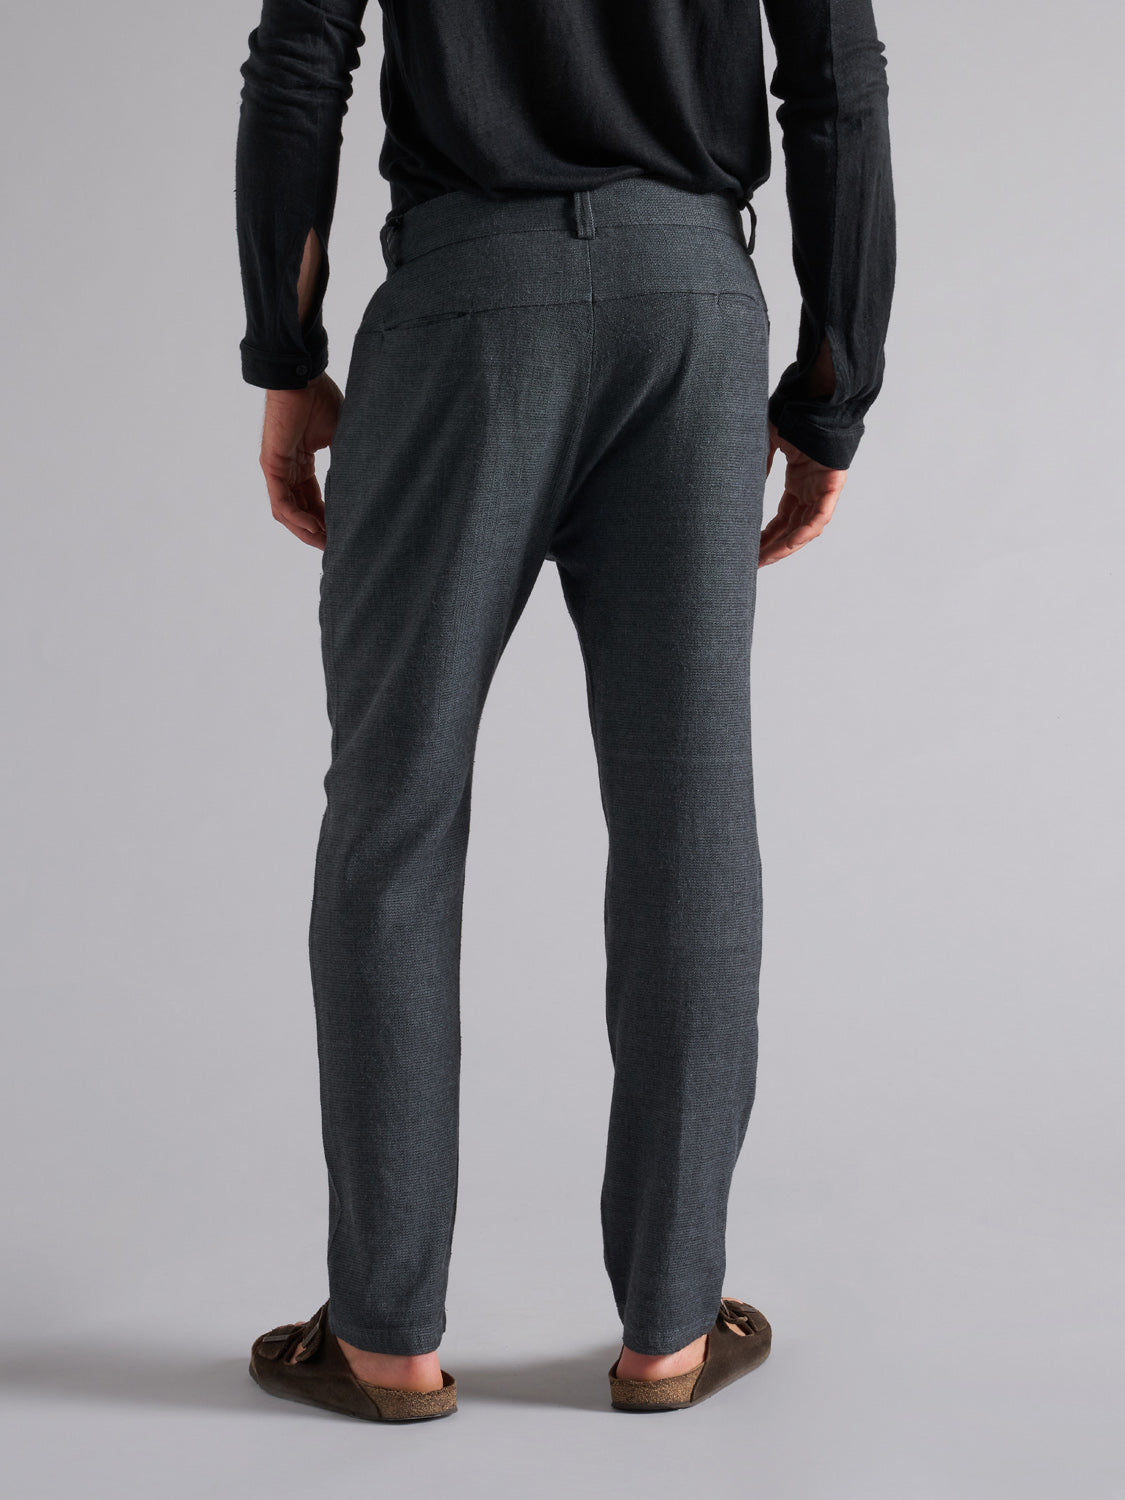 Pantalone in lino-cotone uomo MPA049